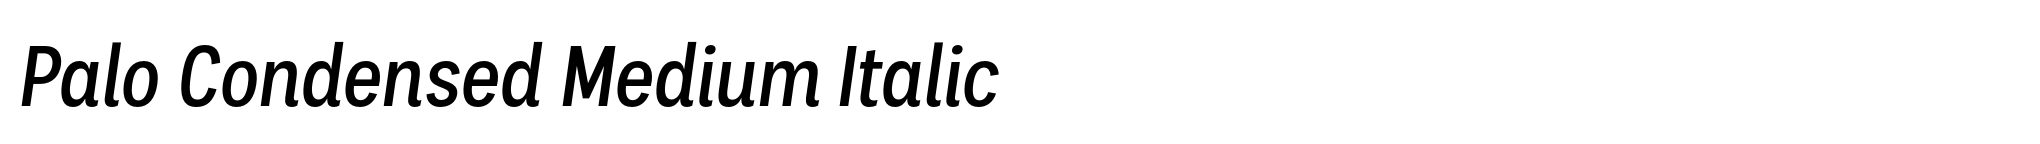 Palo Condensed Medium Italic image